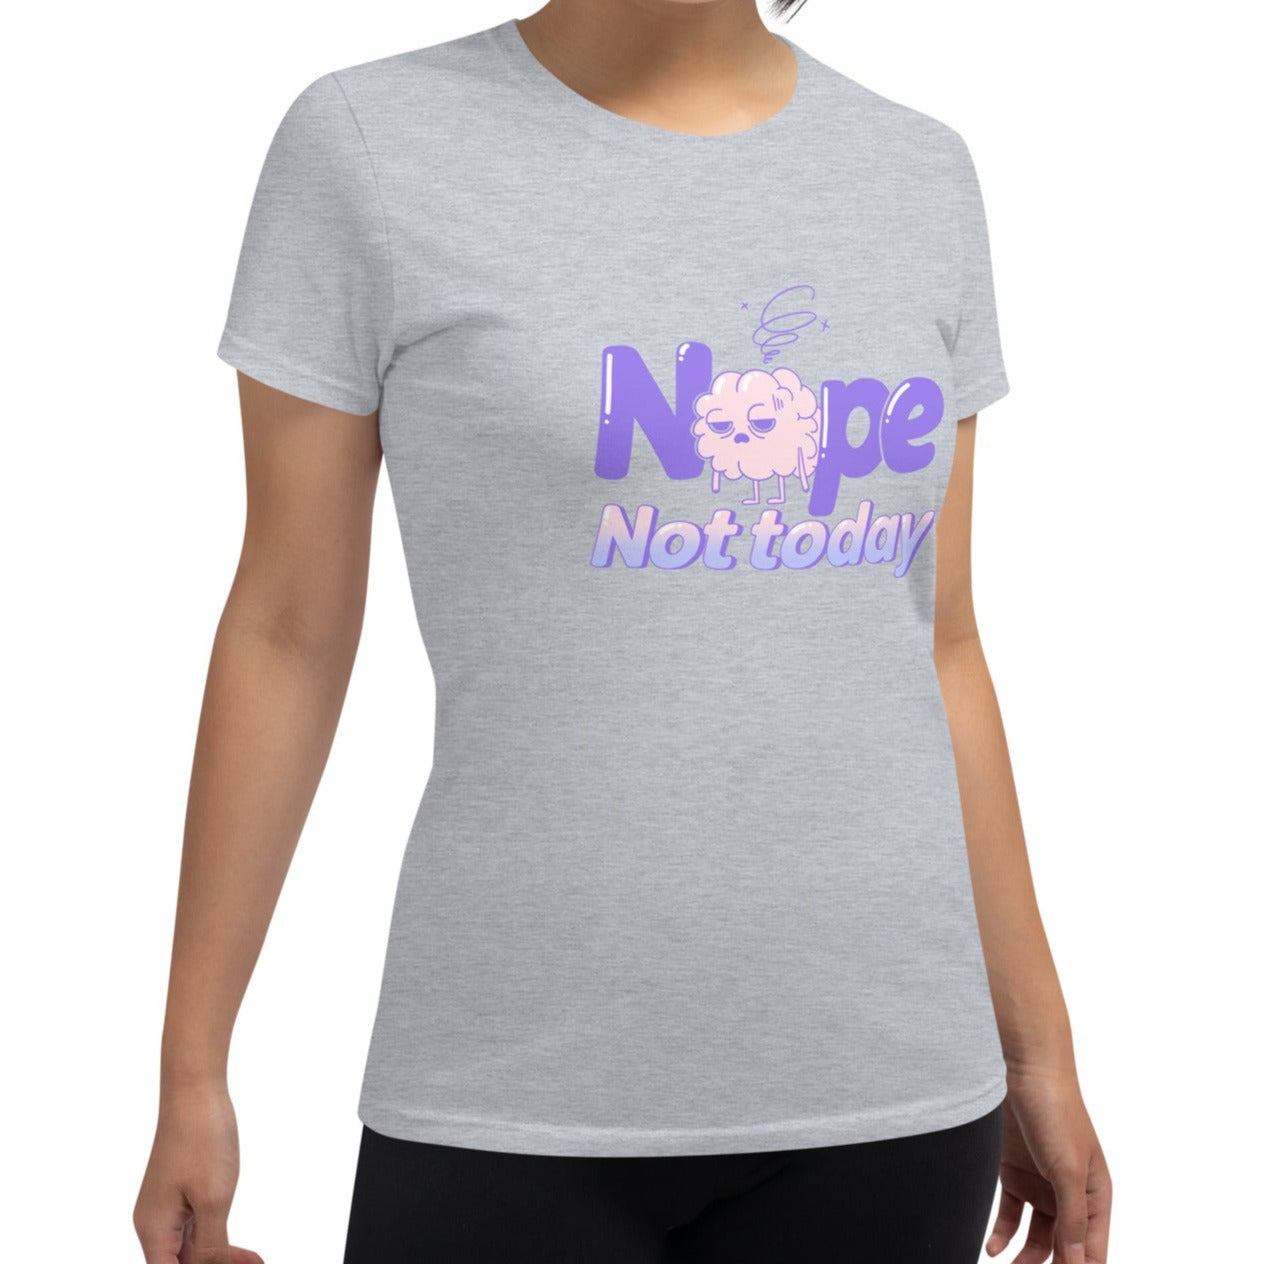 Not Today: Tired Brain, Women's Cut T shirt